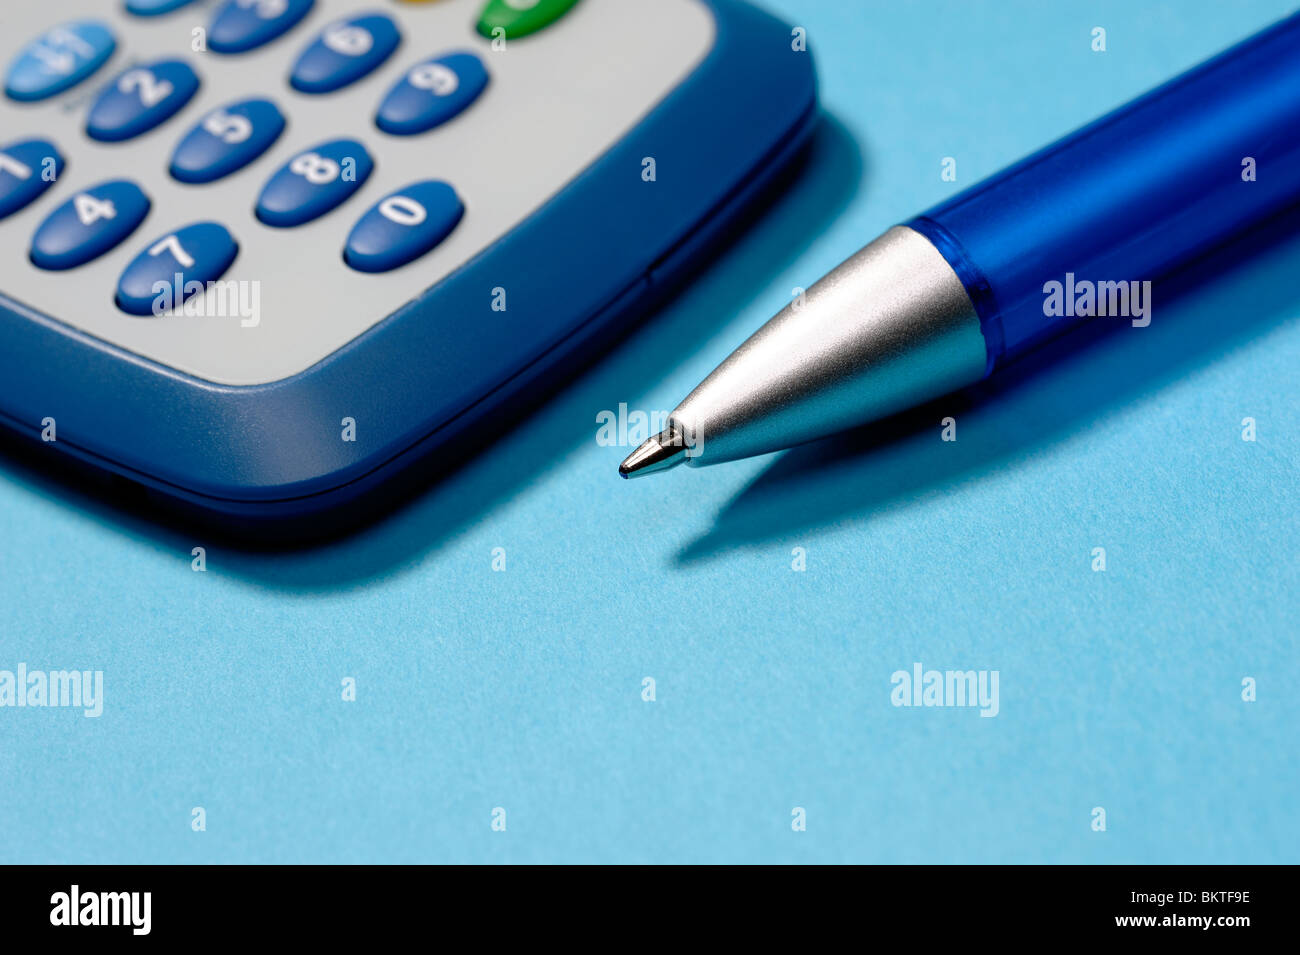 Calculatrice et stylo Banque D'Images